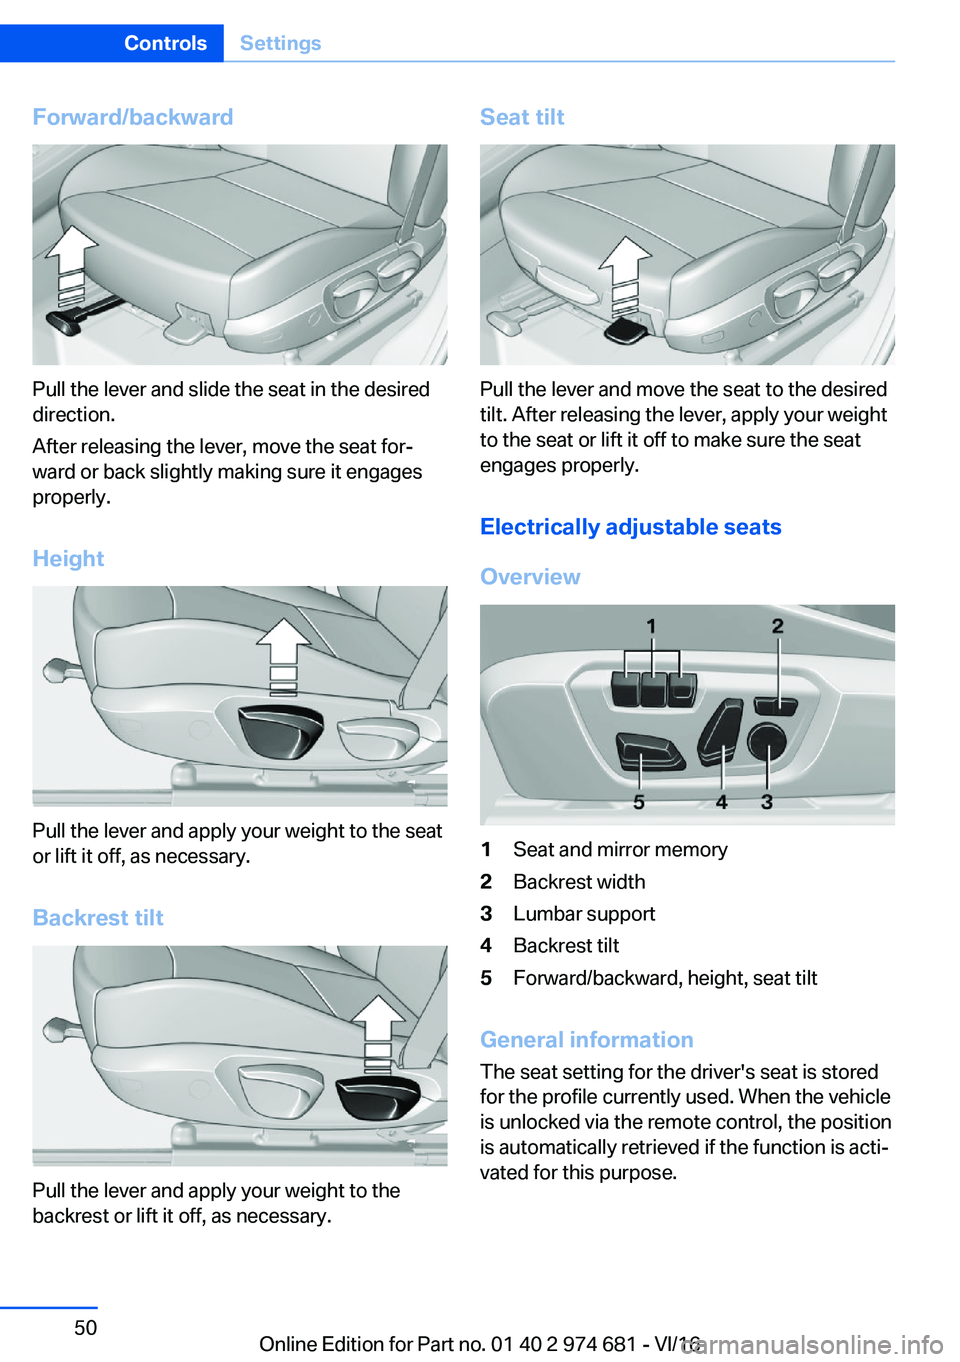 BMW M2 2017 Service Manual �F�o�r�w�a�r�d�/�b�a�c�k�w�a�r�d
�P�u�l�l� �t�h�e� �l�e�v�e�r� �a�n�d� �s�l�i�d�e� �t�h�e� �s�e�a�t� �i�n� �t�h�e� �d�e�s�i�r�e�d�d�i�r�e�c�t�i�o�n�.
�A�f�t�e�r� �r�e�l�e�a�s�i�n�g� �t�h�e� �l�e�v�e�r